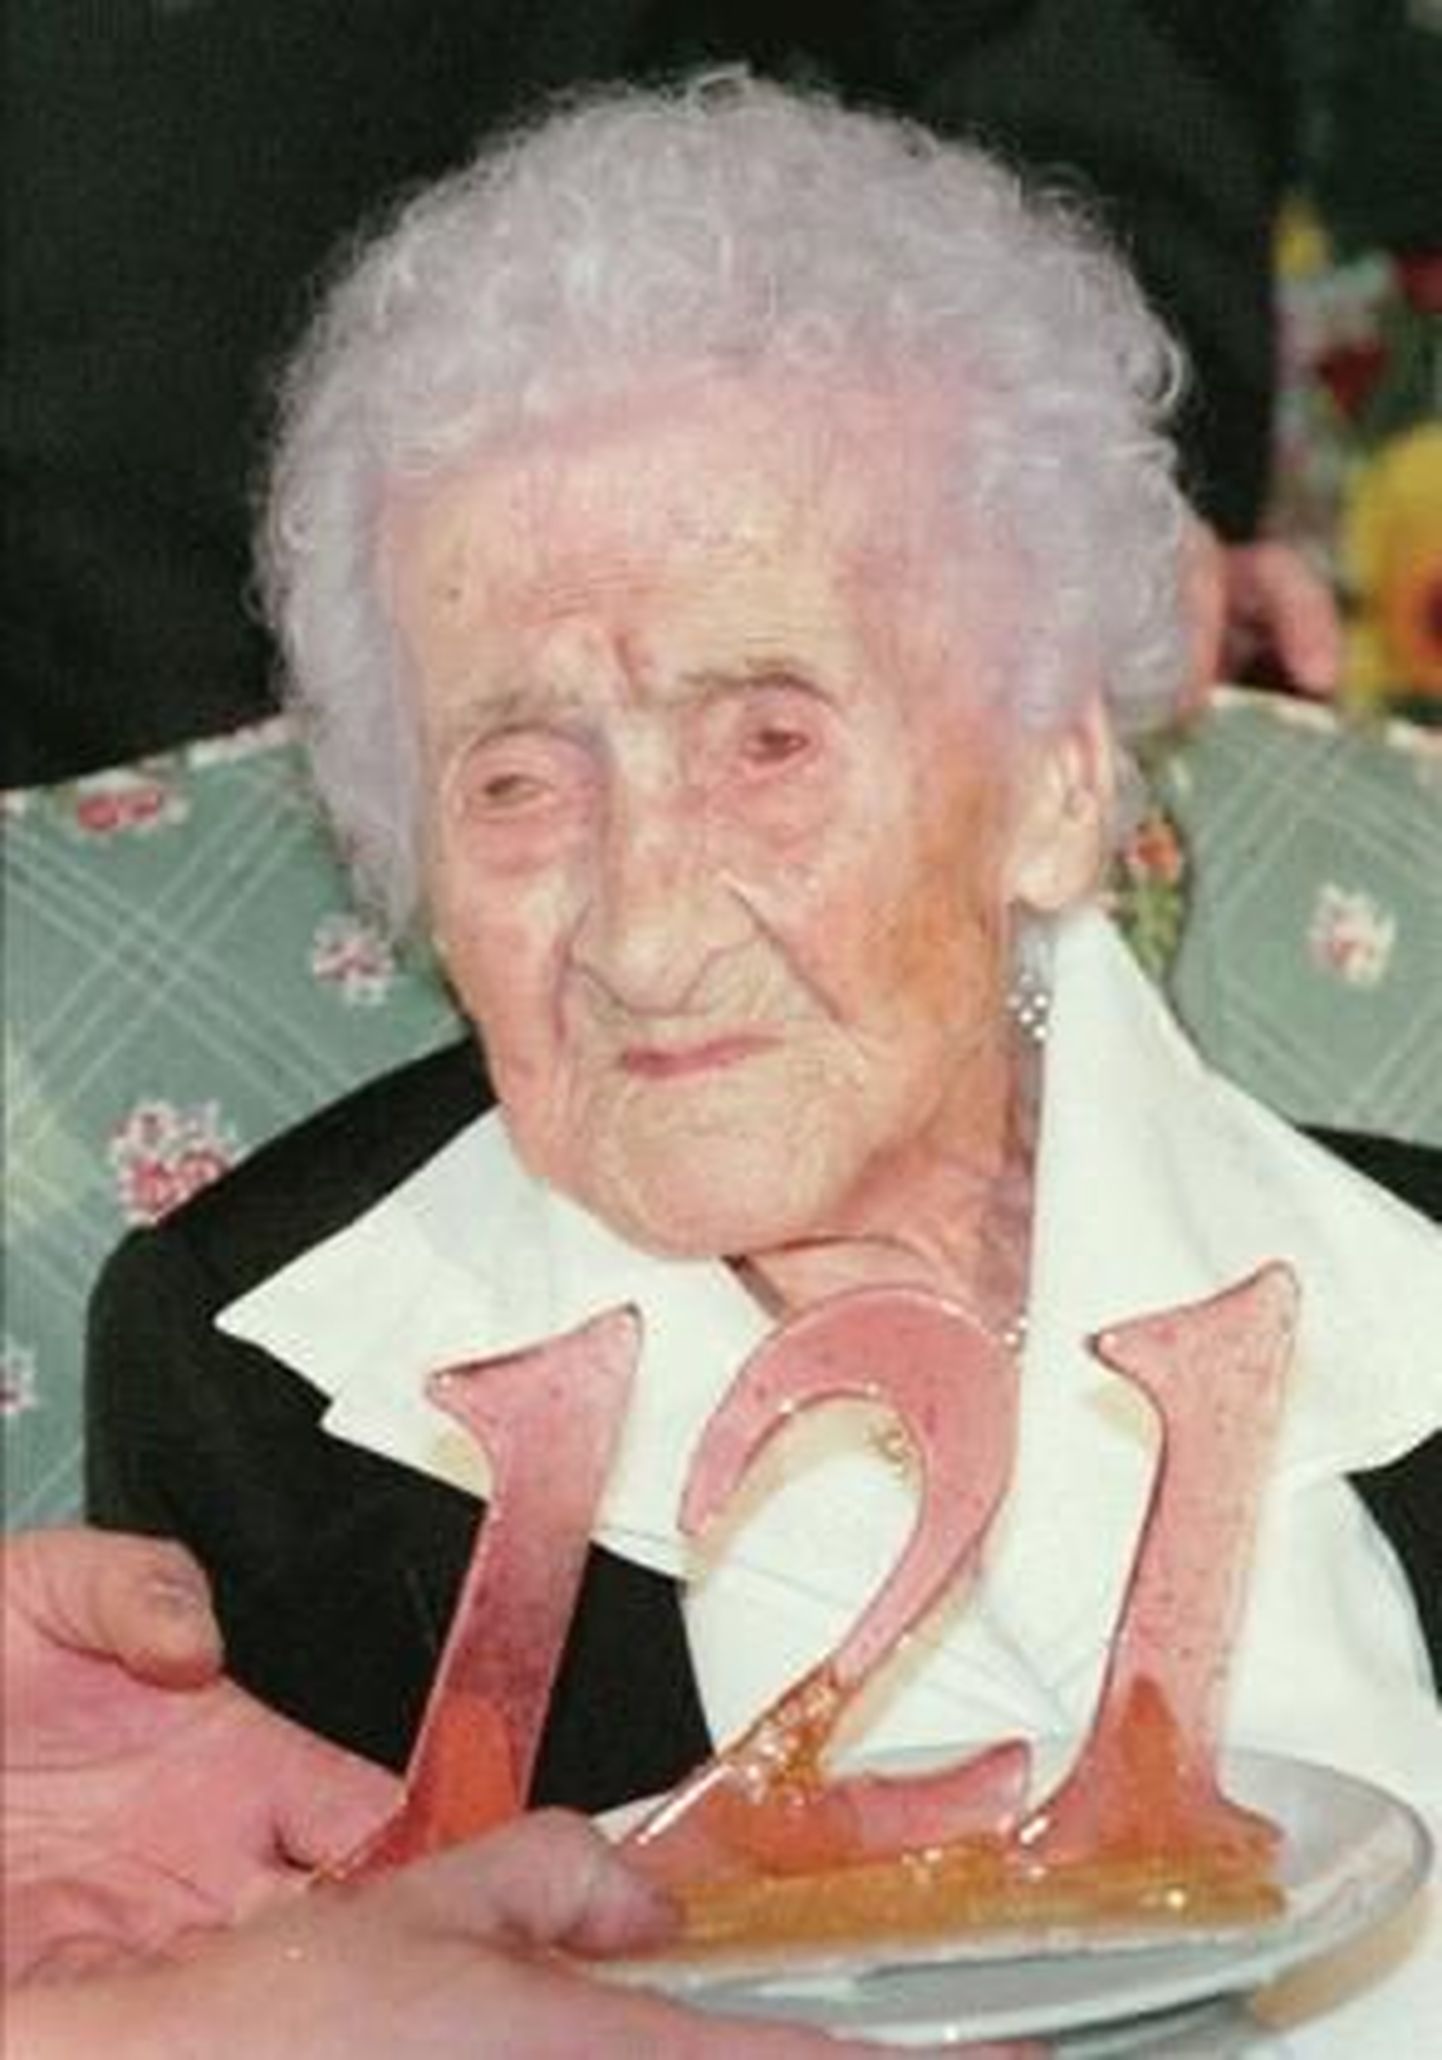 Senistel andmetel kõige kauem elanud Jeanne Calment oma 121. sünnipäeval.